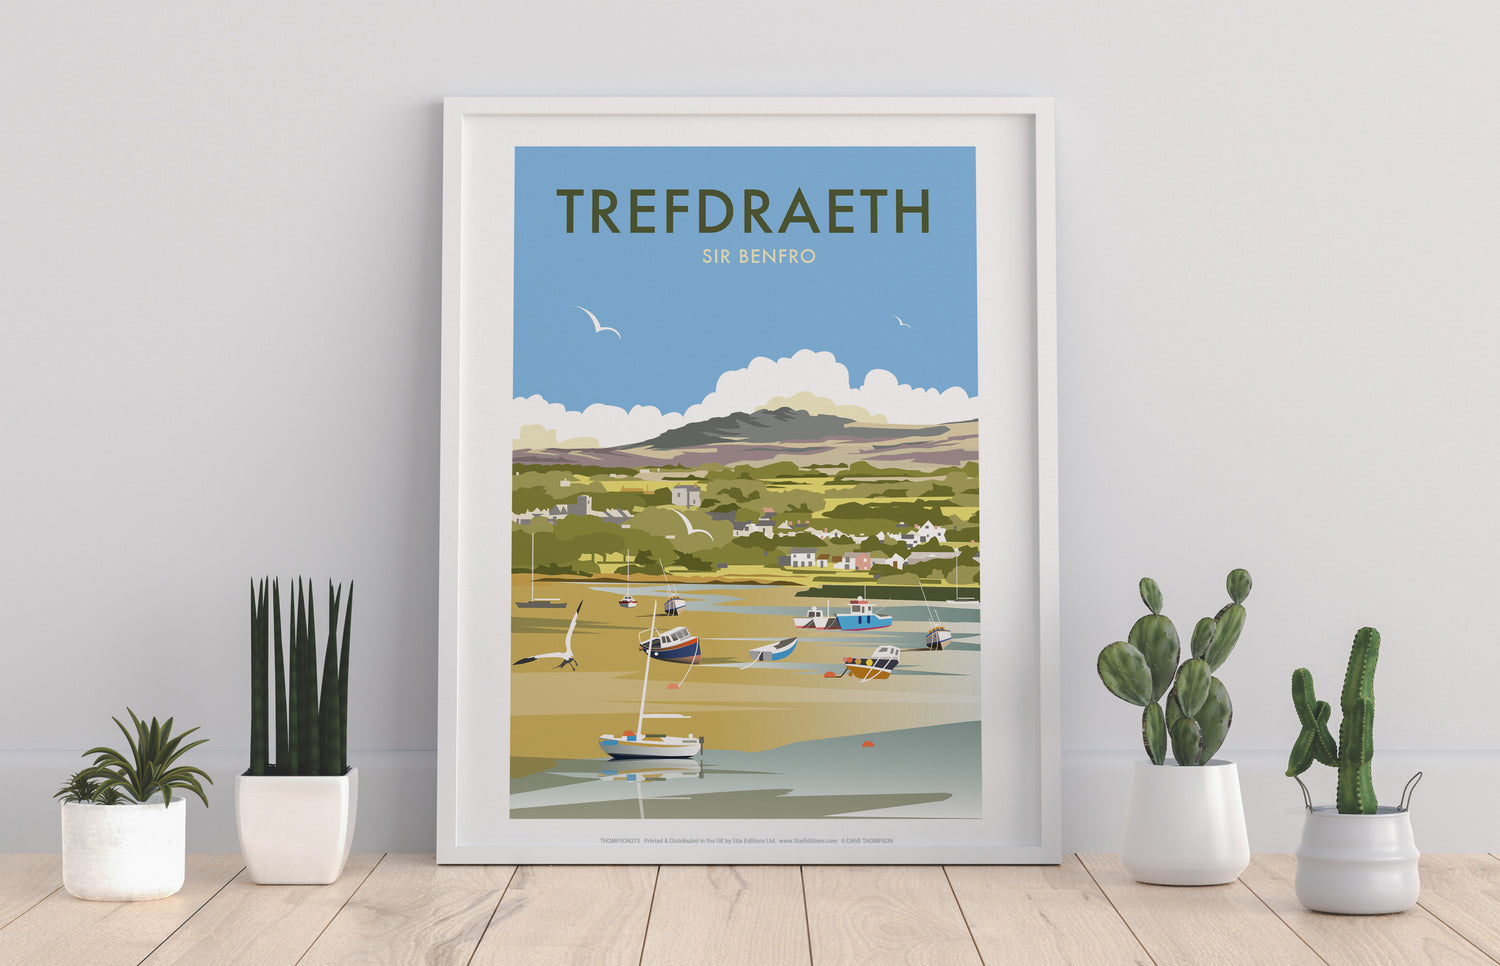 Trefdraeth, Wales - Art Print